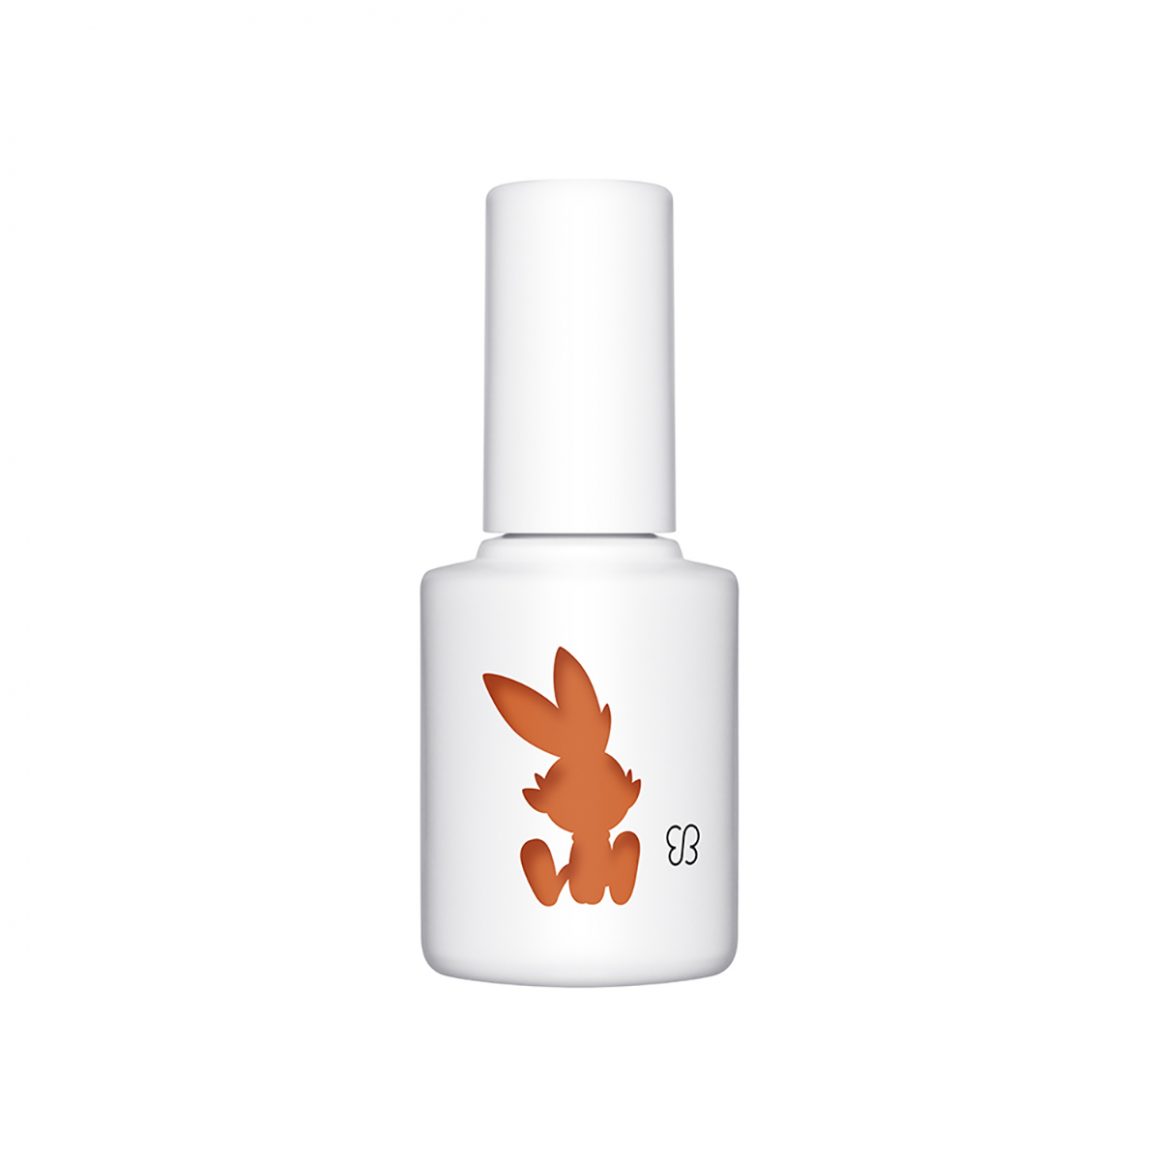 日本品牌uka推出神奇宝贝主题色的指甲油健康美容设计创意